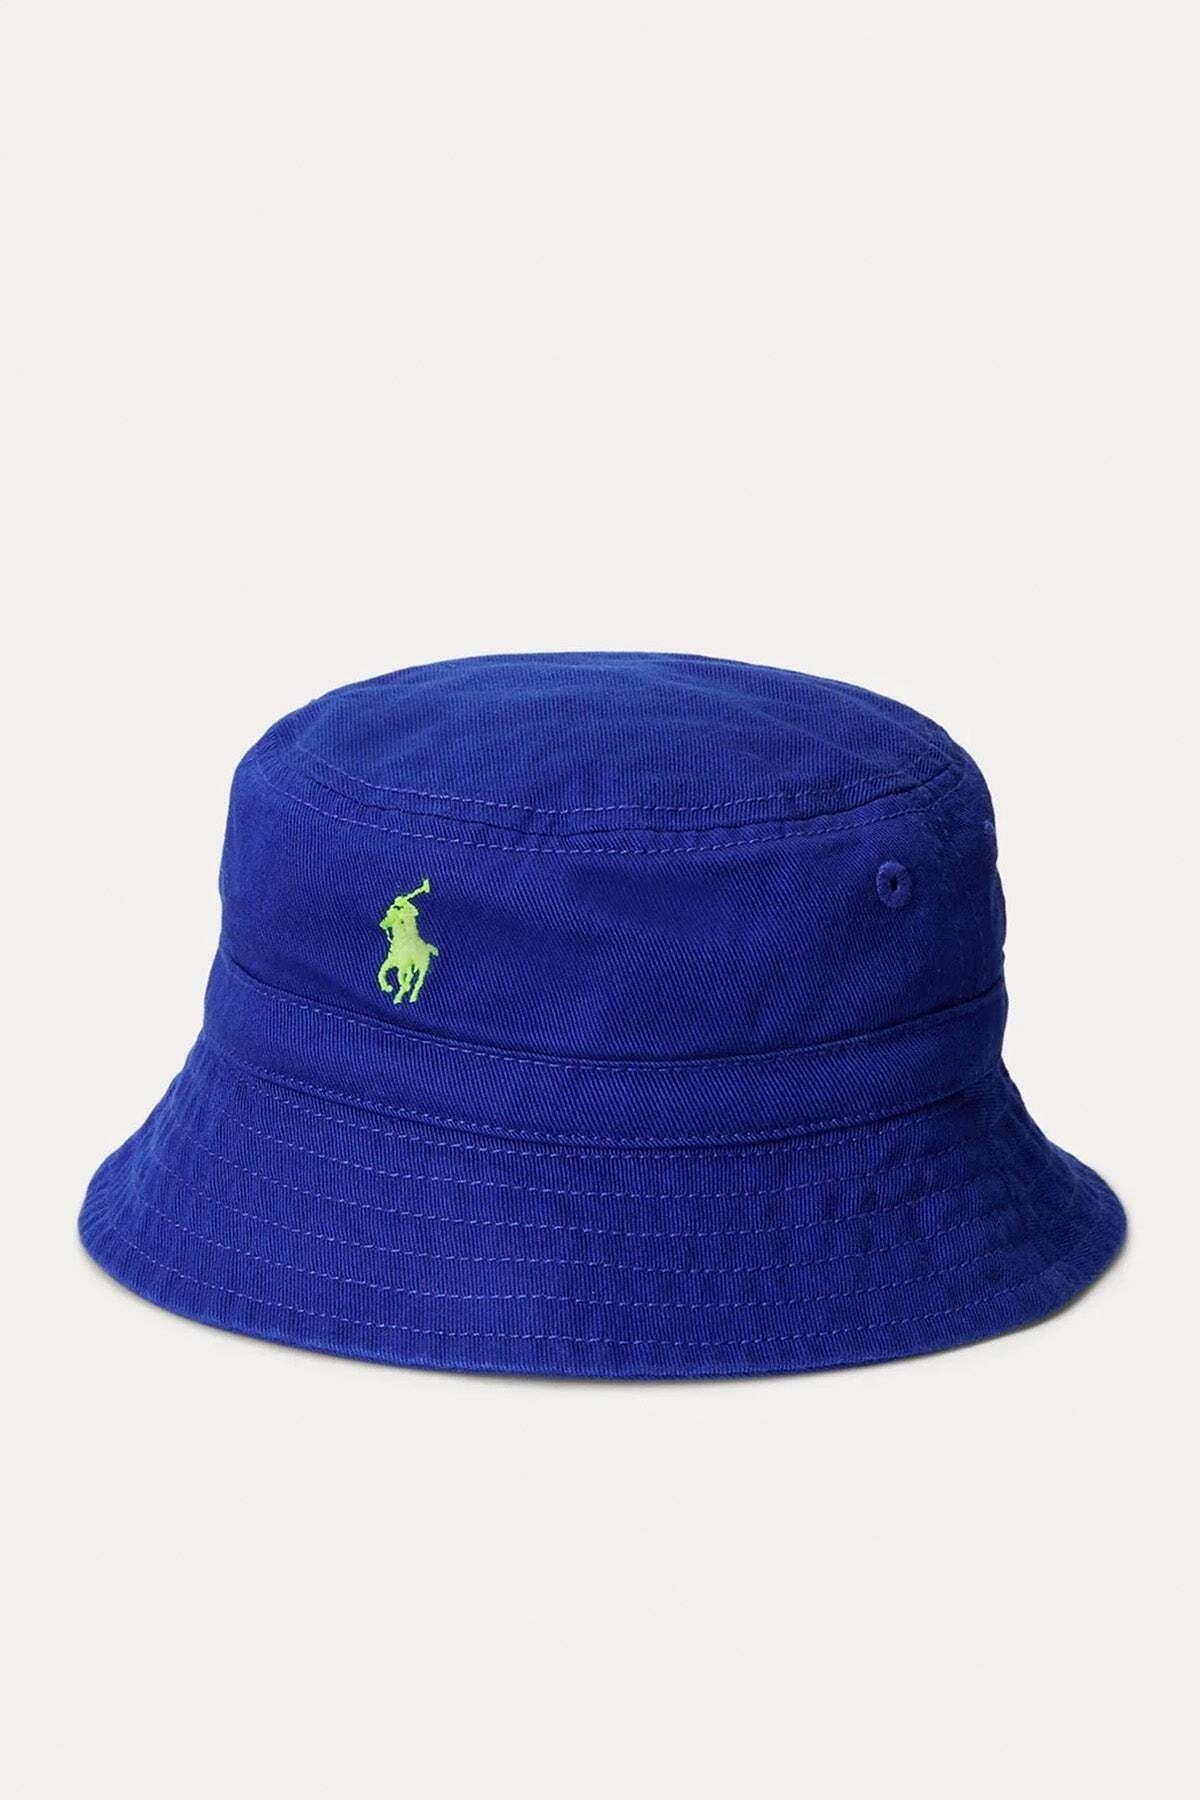 Ralph Lauren 2-4 Yaş Unisex Çocuk Bucket Şapka